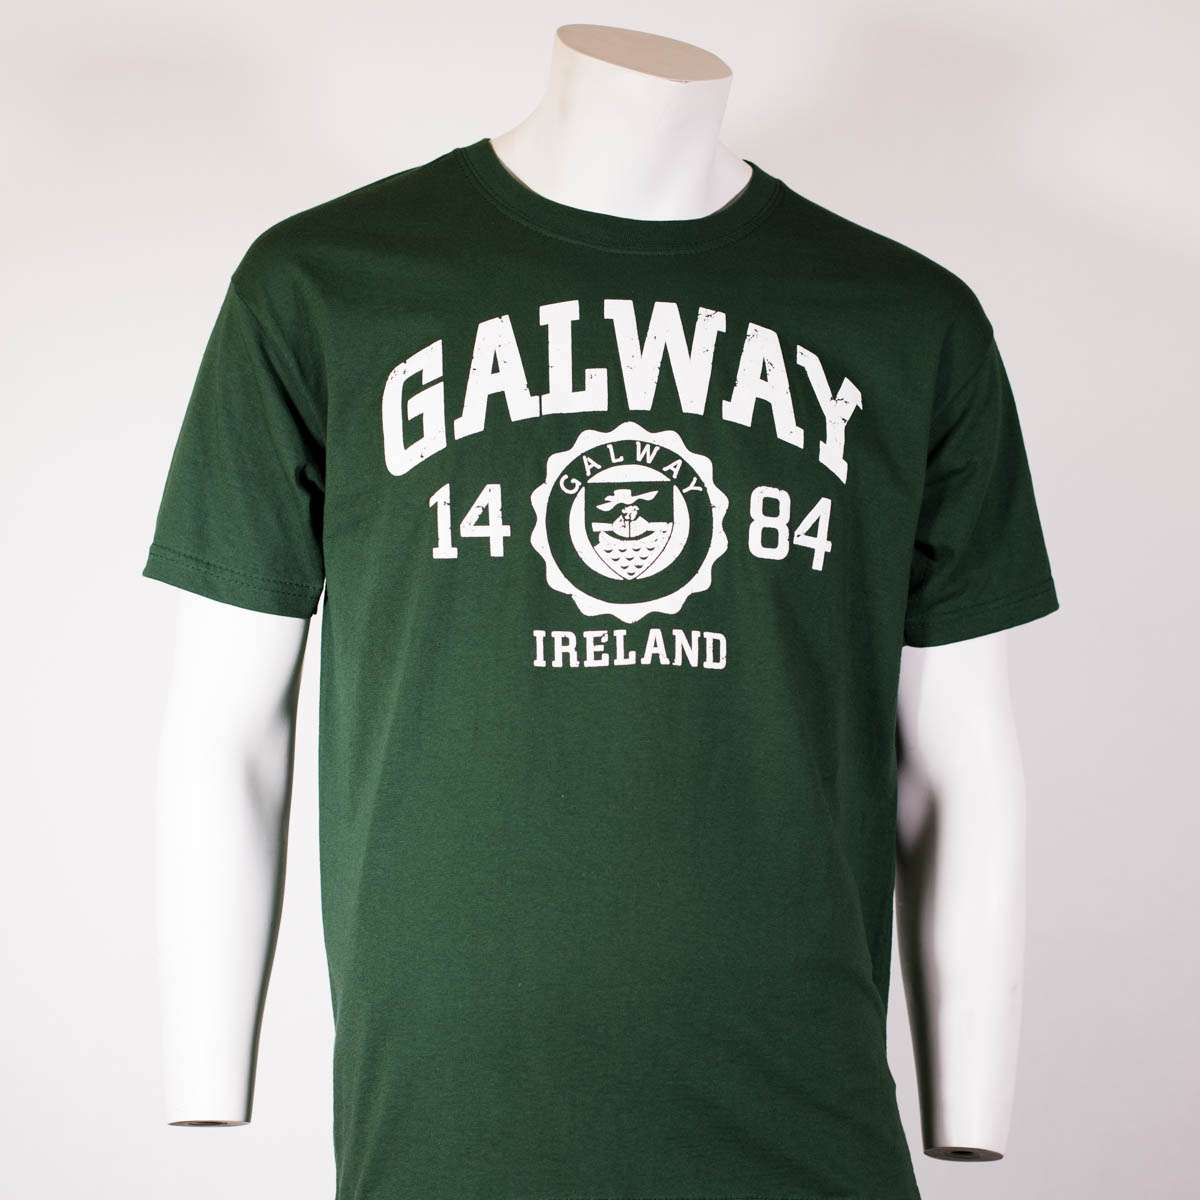 Galway 1484 Green Shirt